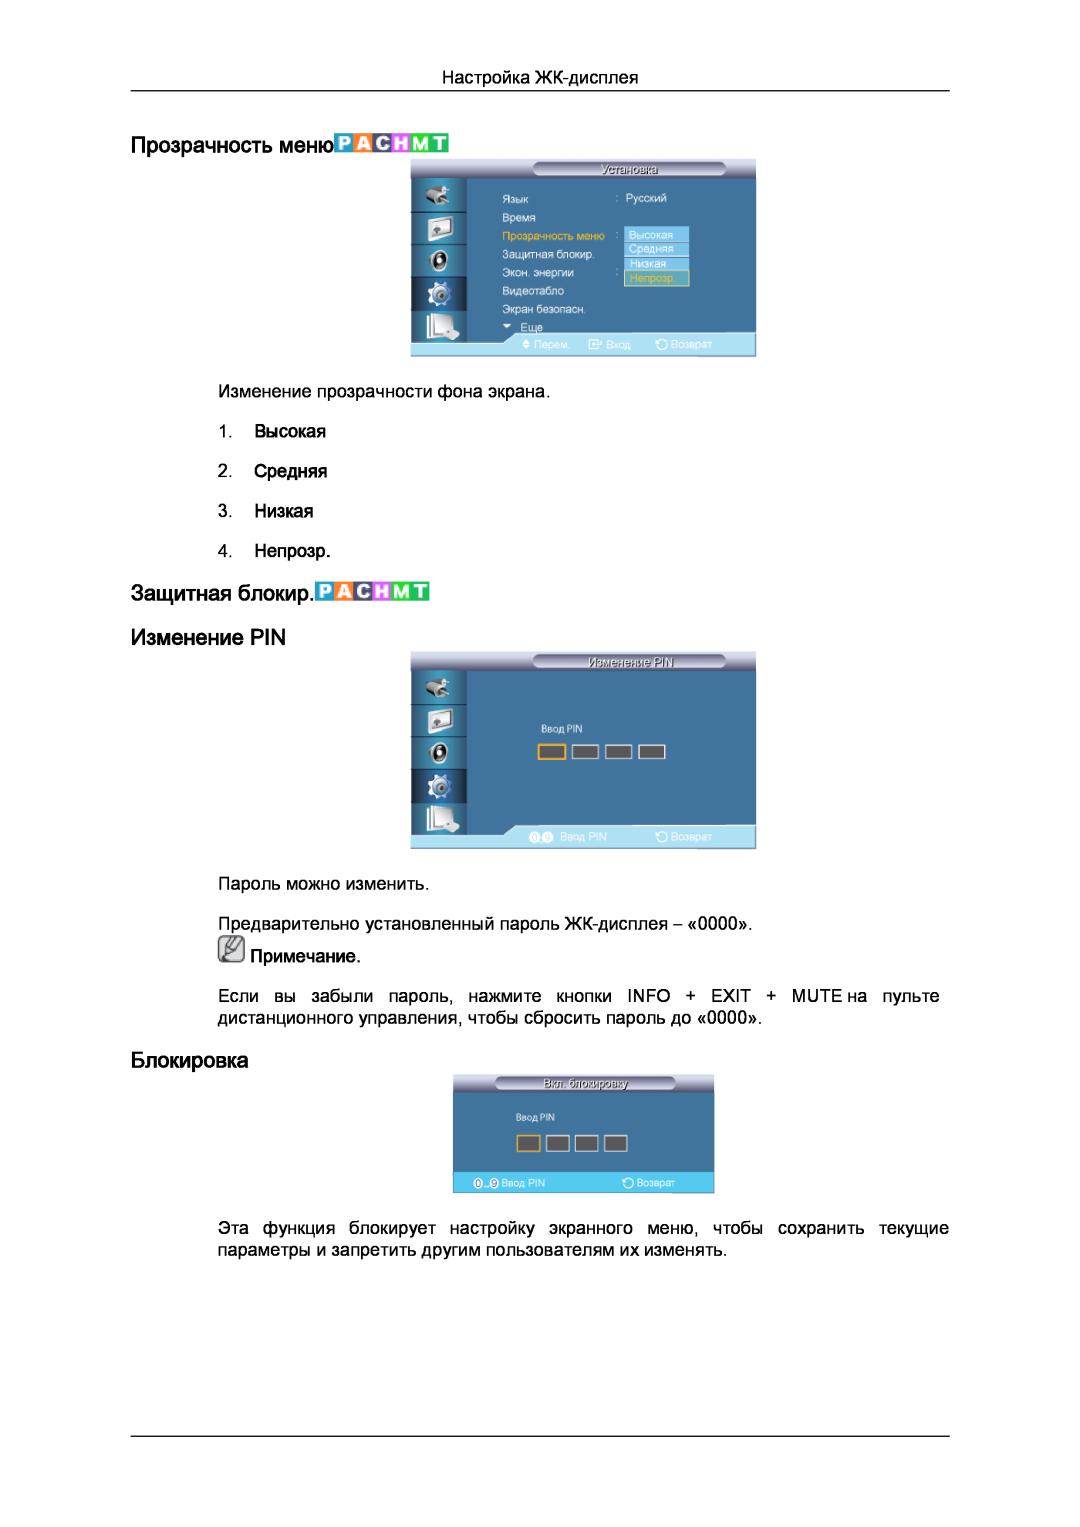 Samsung LH32CRSMBD/EN, LH32CRTMBC/EN manual Прозрачность меню, Блокировка, Защитная блокир. Изменение PIN, Примечание 